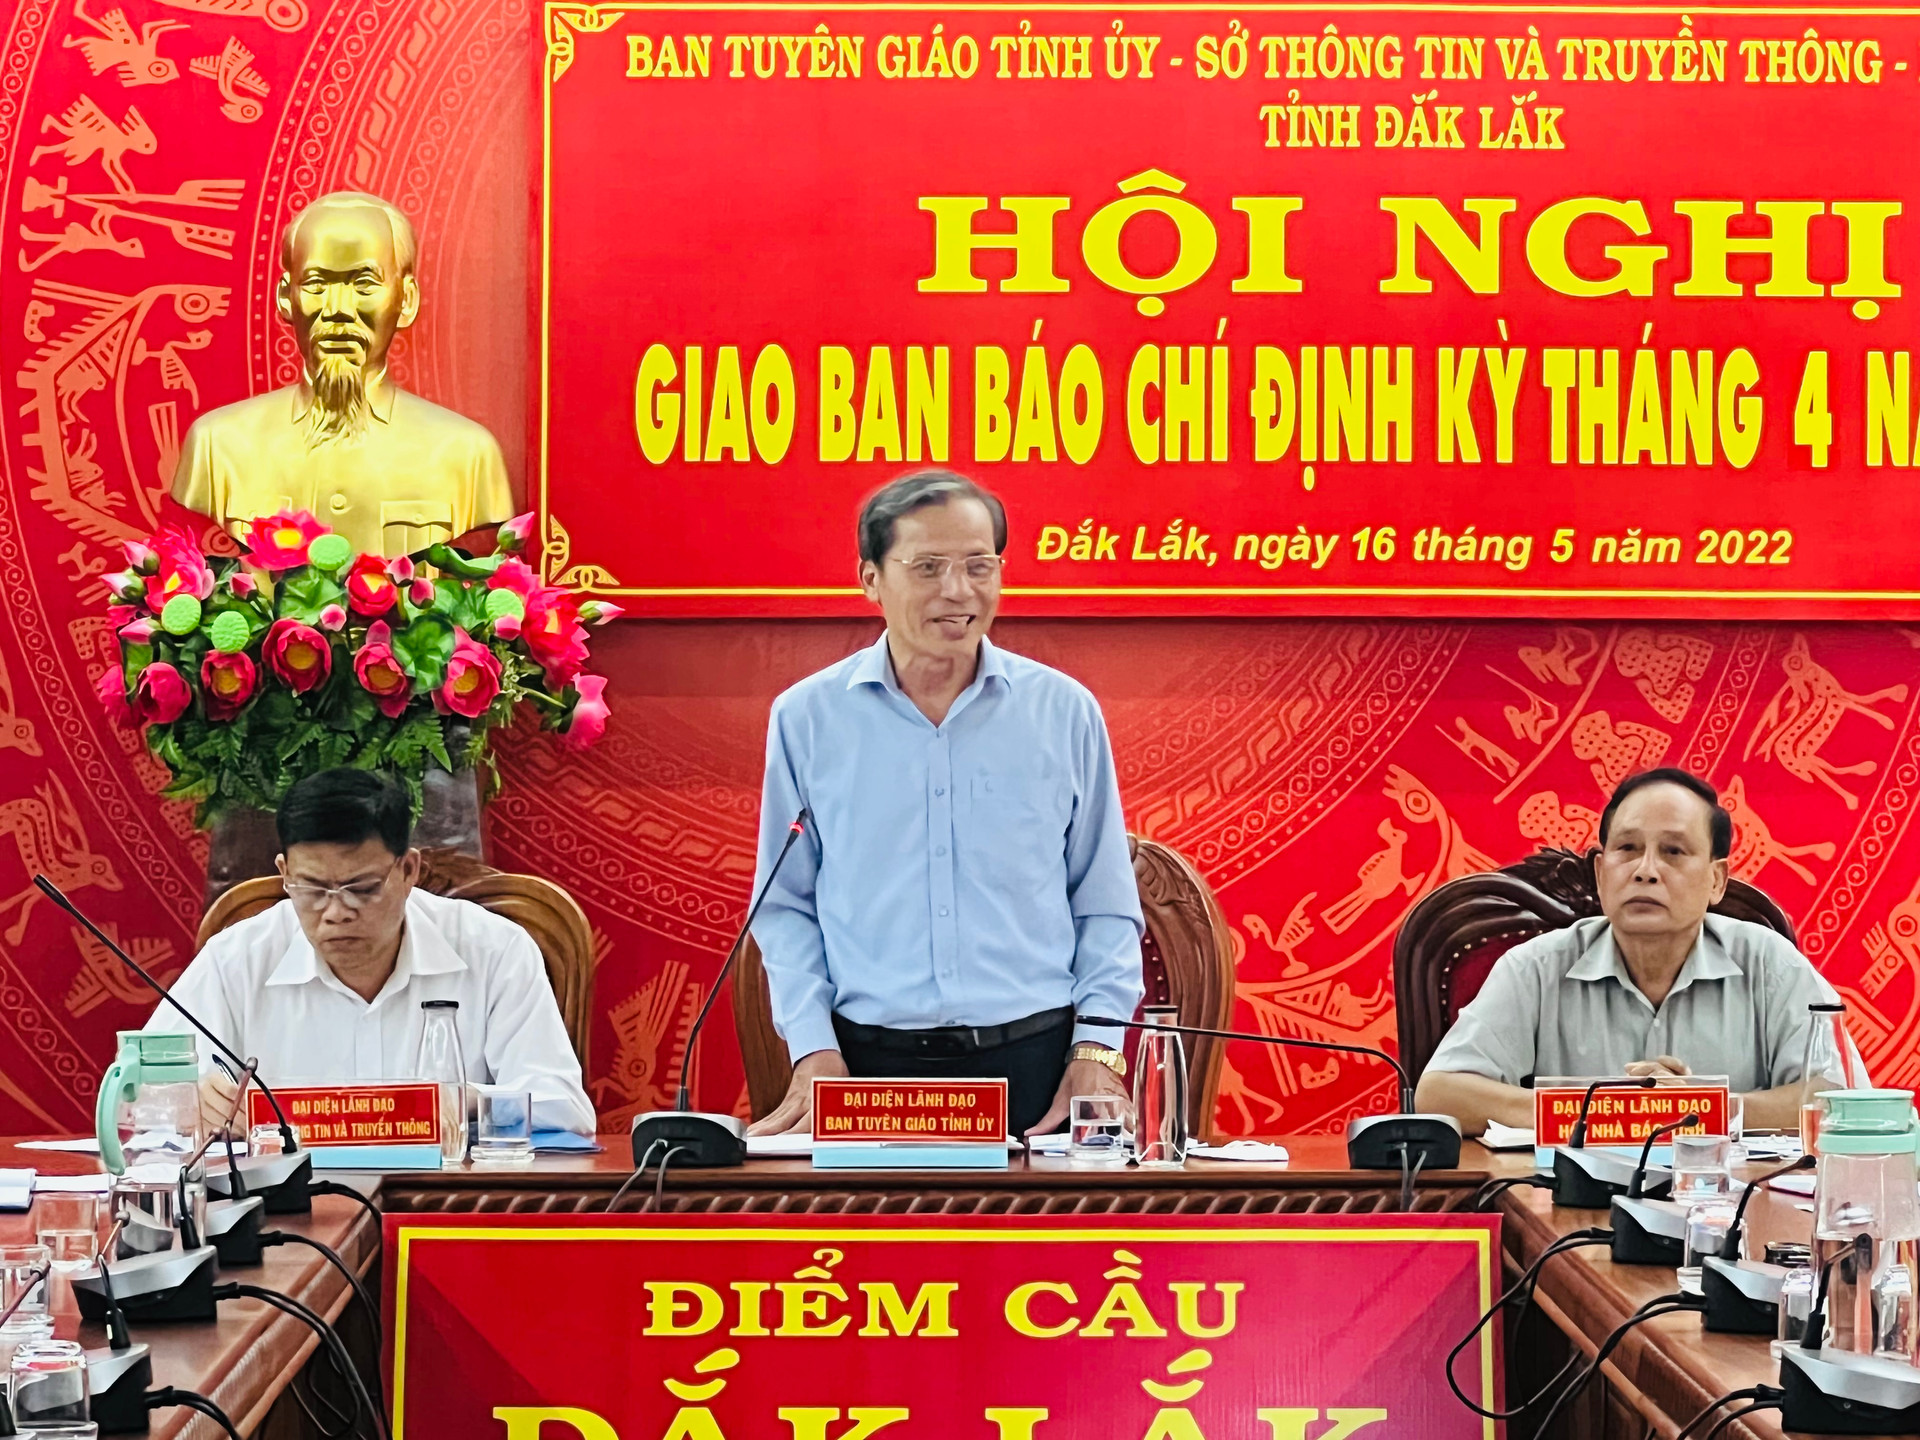 Đồng chí Nguyễn Cảnh, Phó Trưởng Ban Tuyên giáo Tỉnh ủy , chủ trì hội nghị.